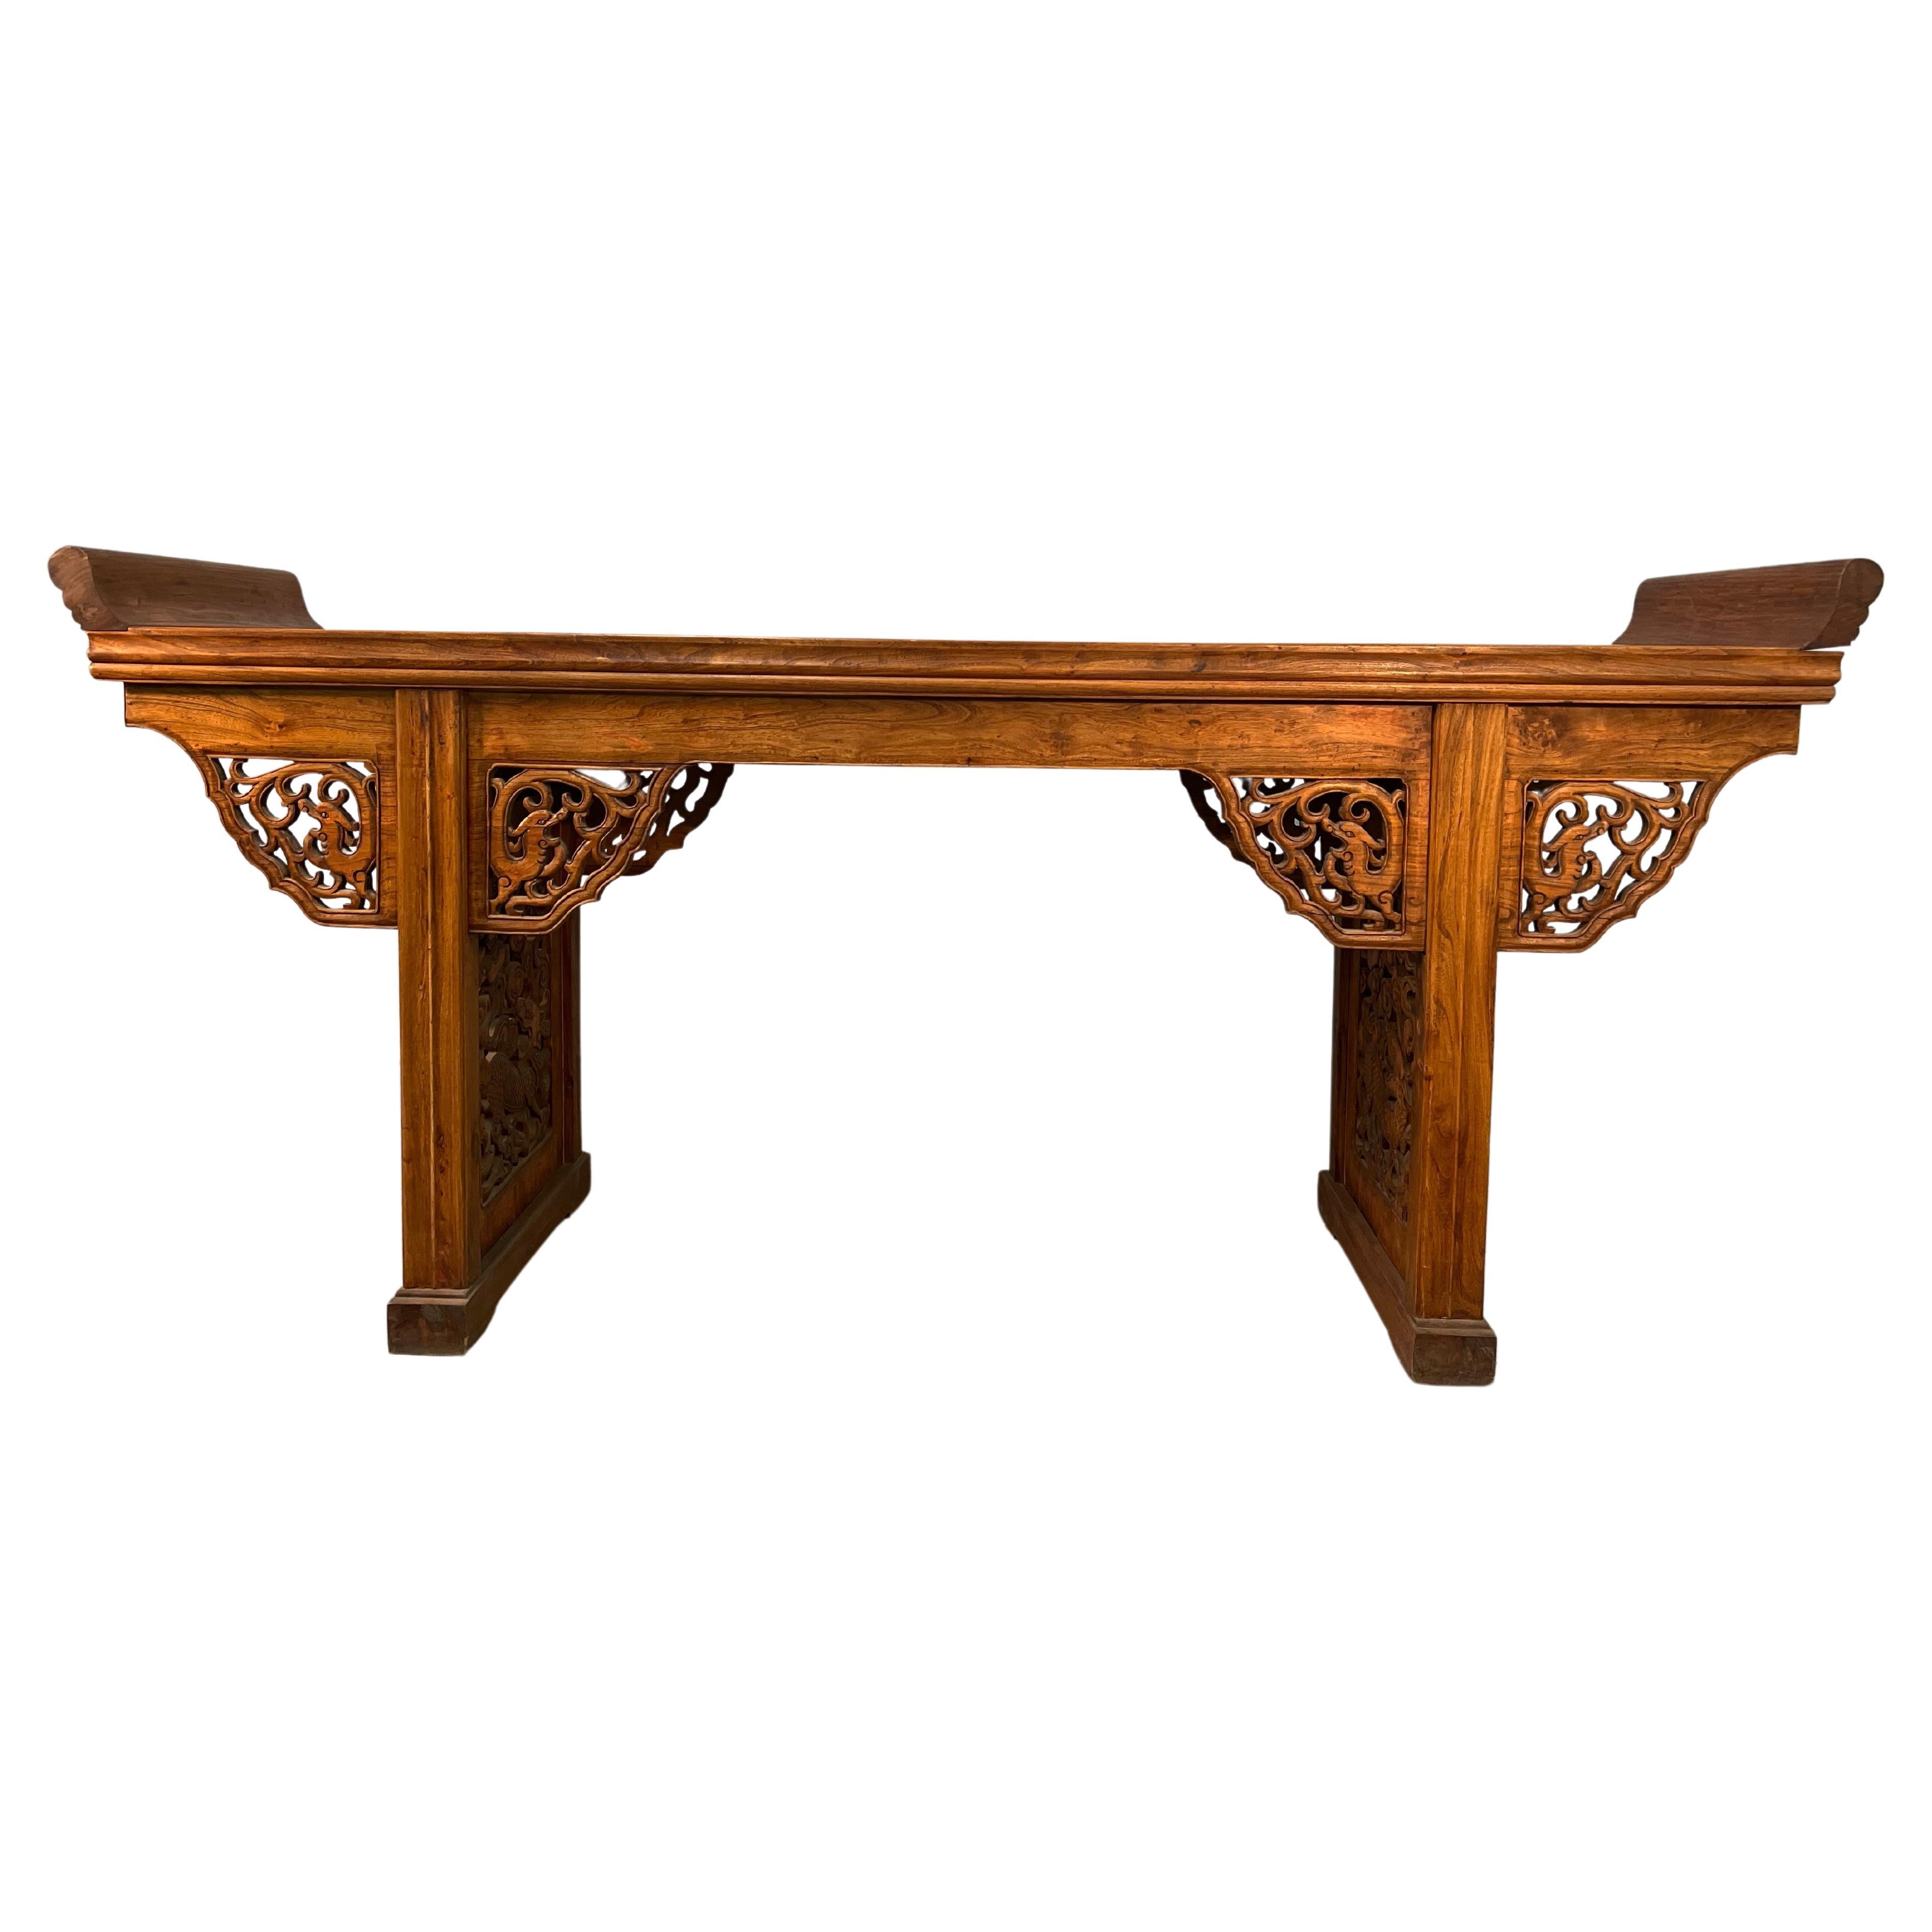 Table d'autel en bois d'orme sculpté datant du 19ème siècle.